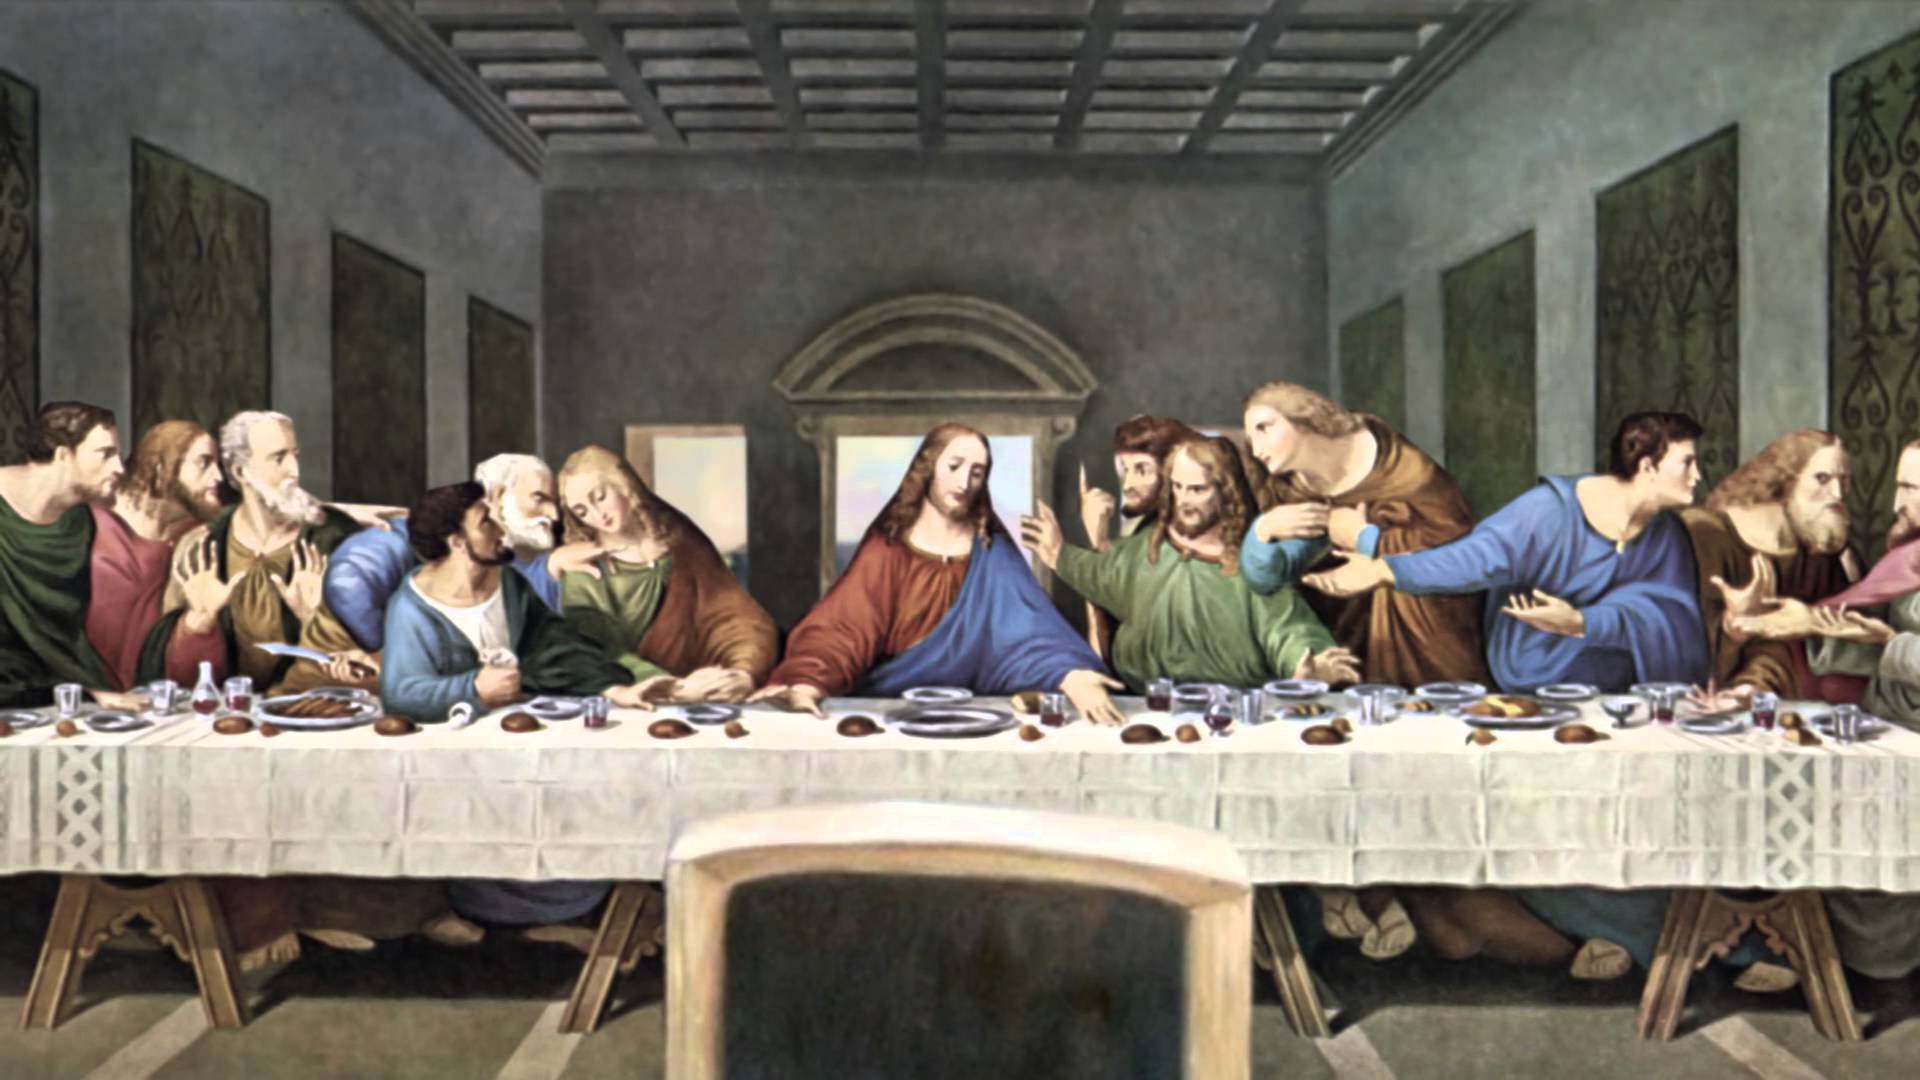 Parallax Artwork Leonardo Da Vinci The Last Supper